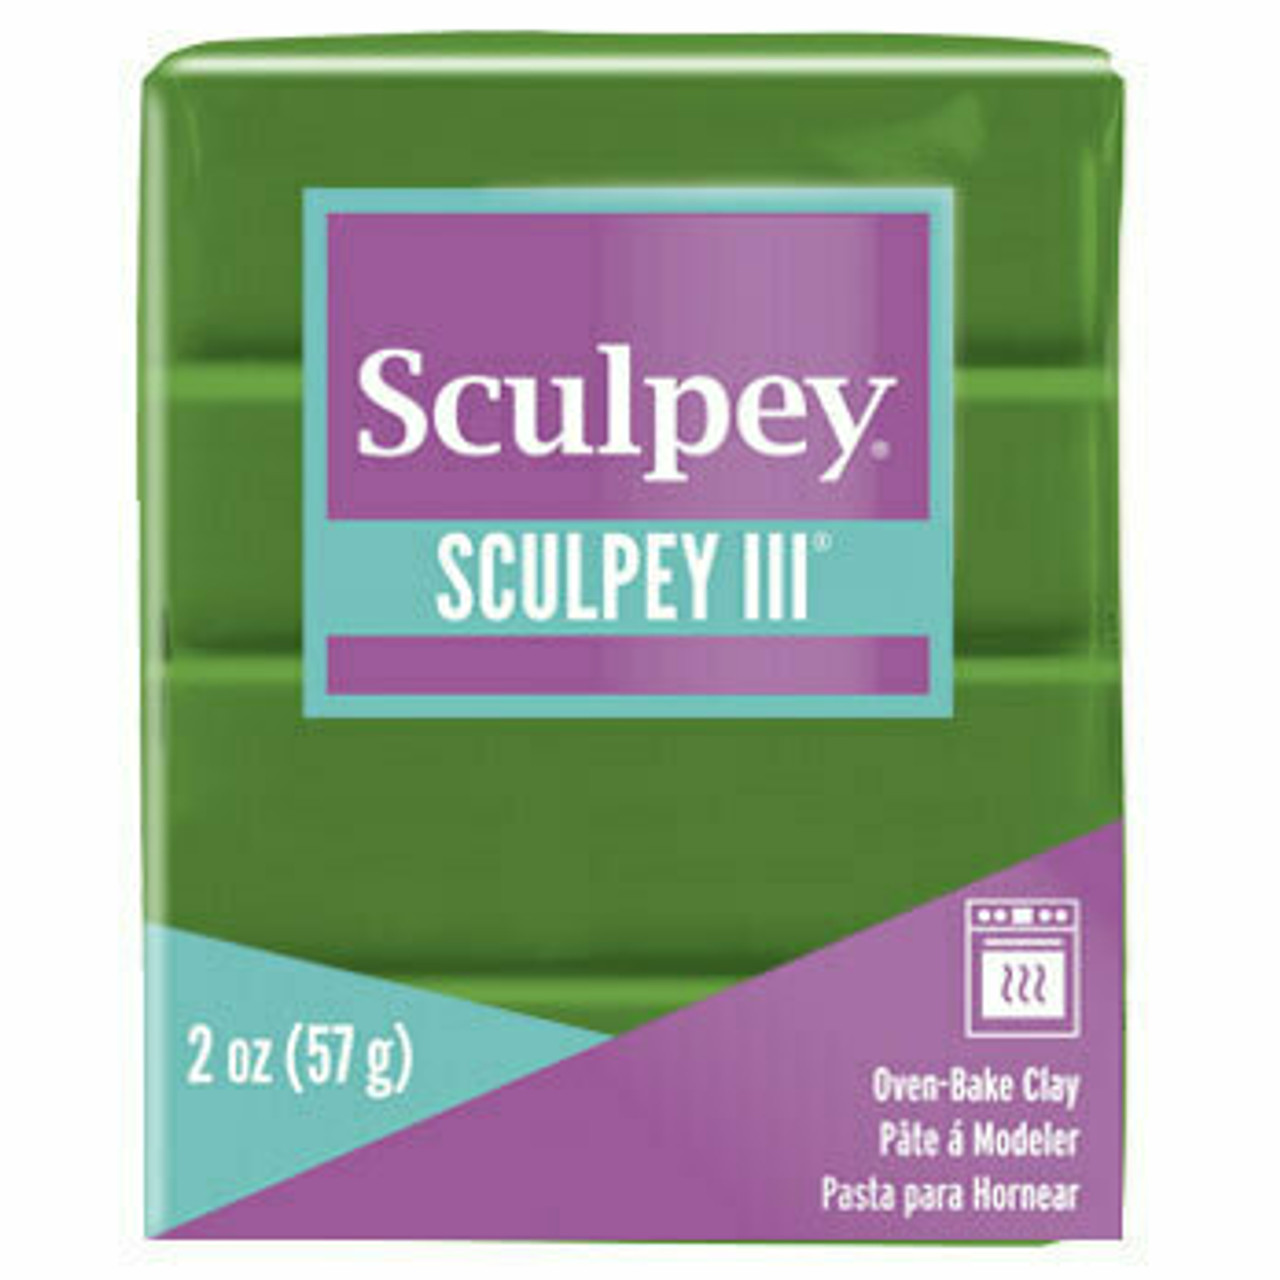 Sculpey III Leaf Green 2oz (57g)